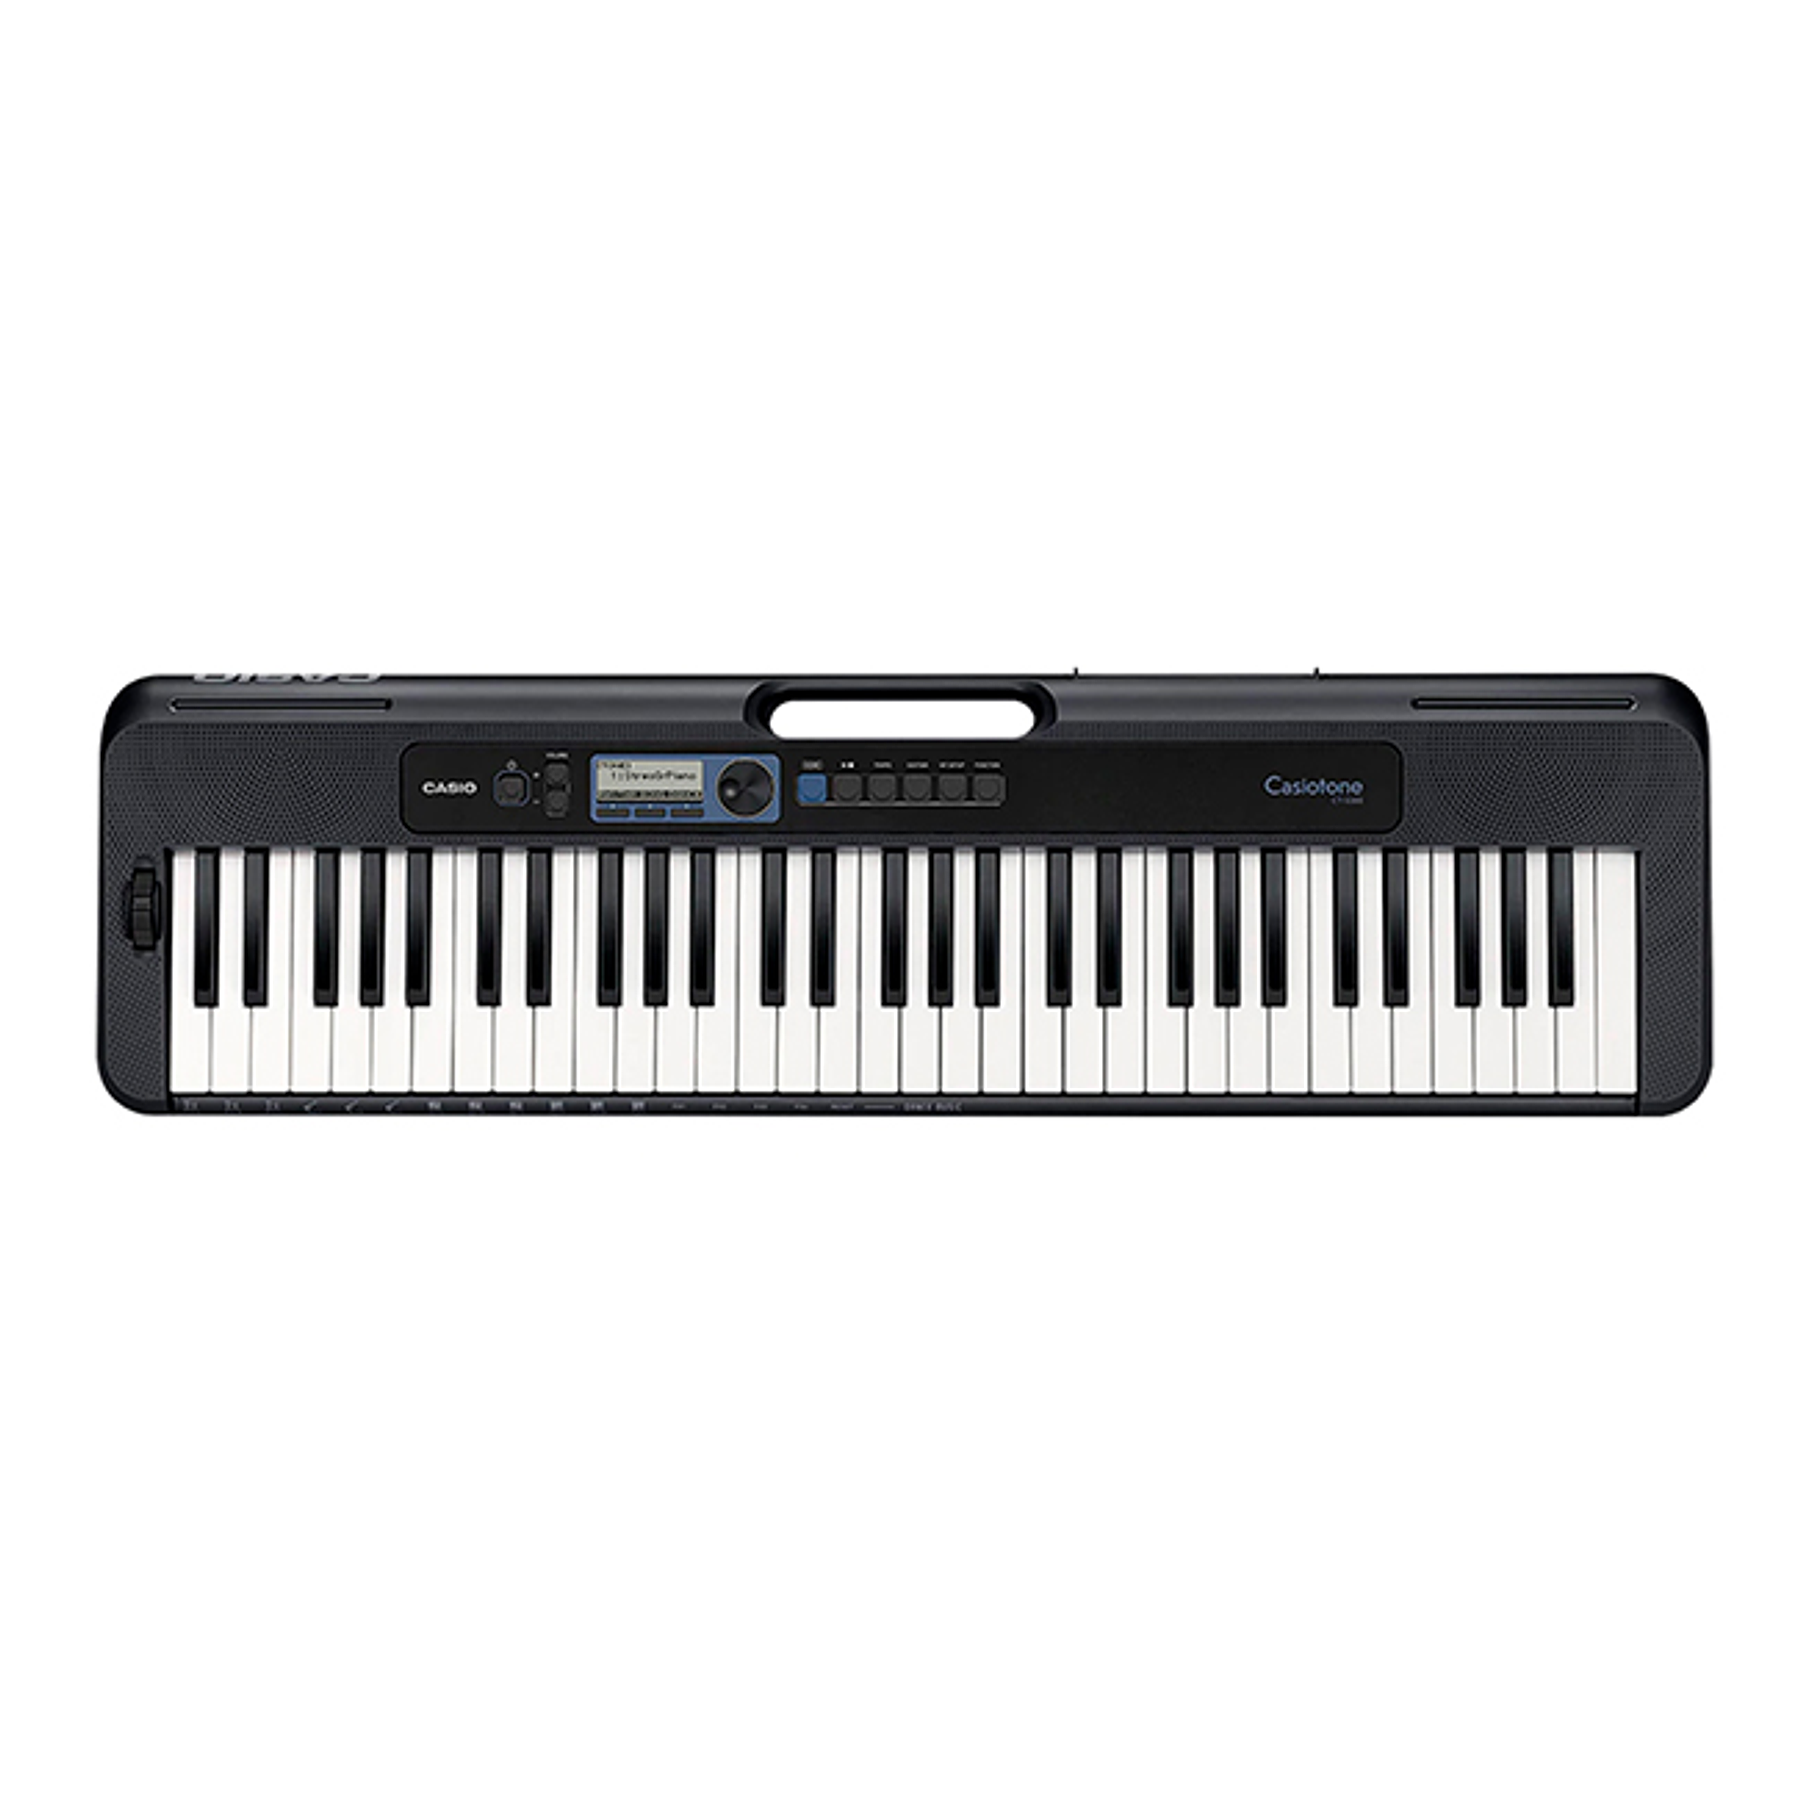 Pack teclado Casio CT-S300 + Atril + funda y Transformador Original